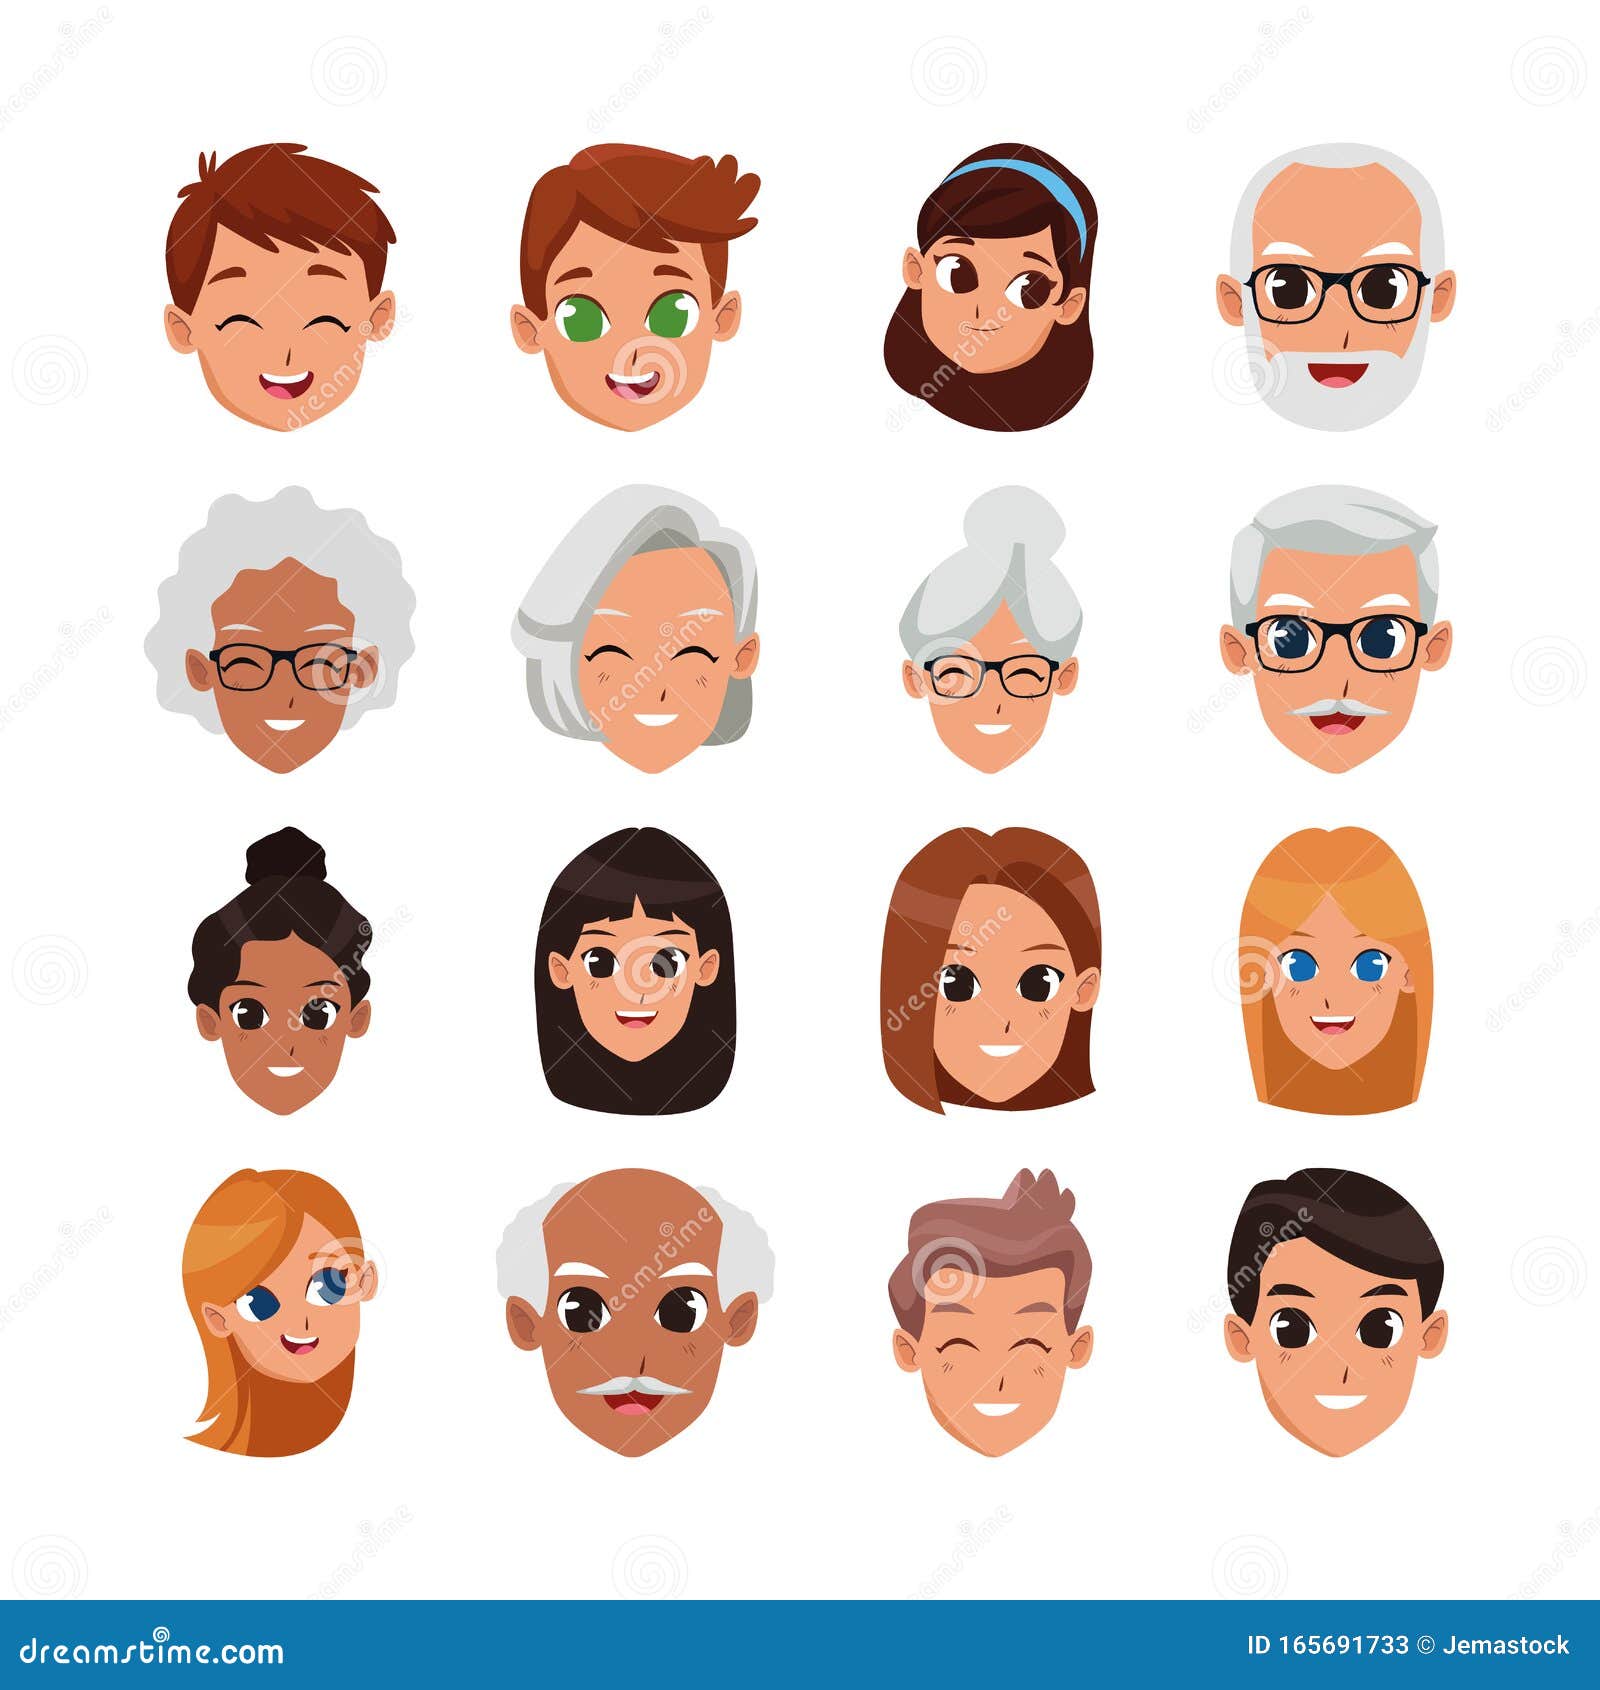 Top 81+ imagen dibujos de caras de personas